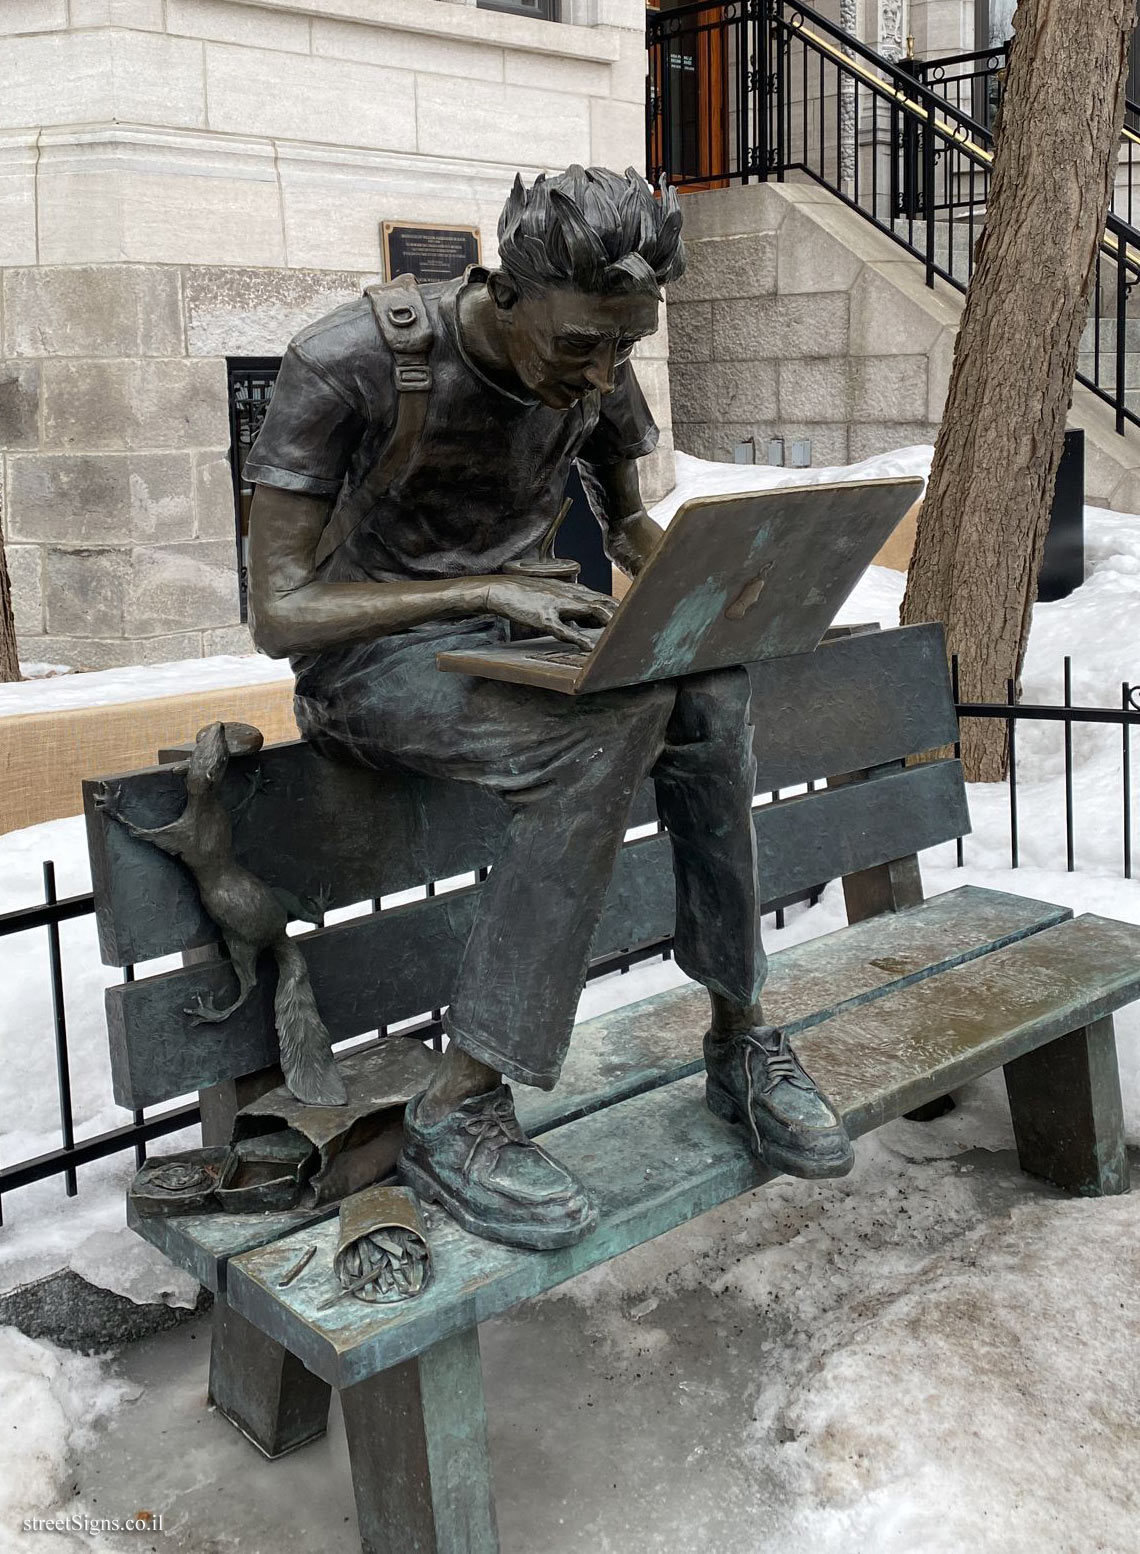 Montreal - "The Lesson" is an outdoor sculpture by Cédric Loth - Université McGill, Montréal, QC H3A 1G3, Canada